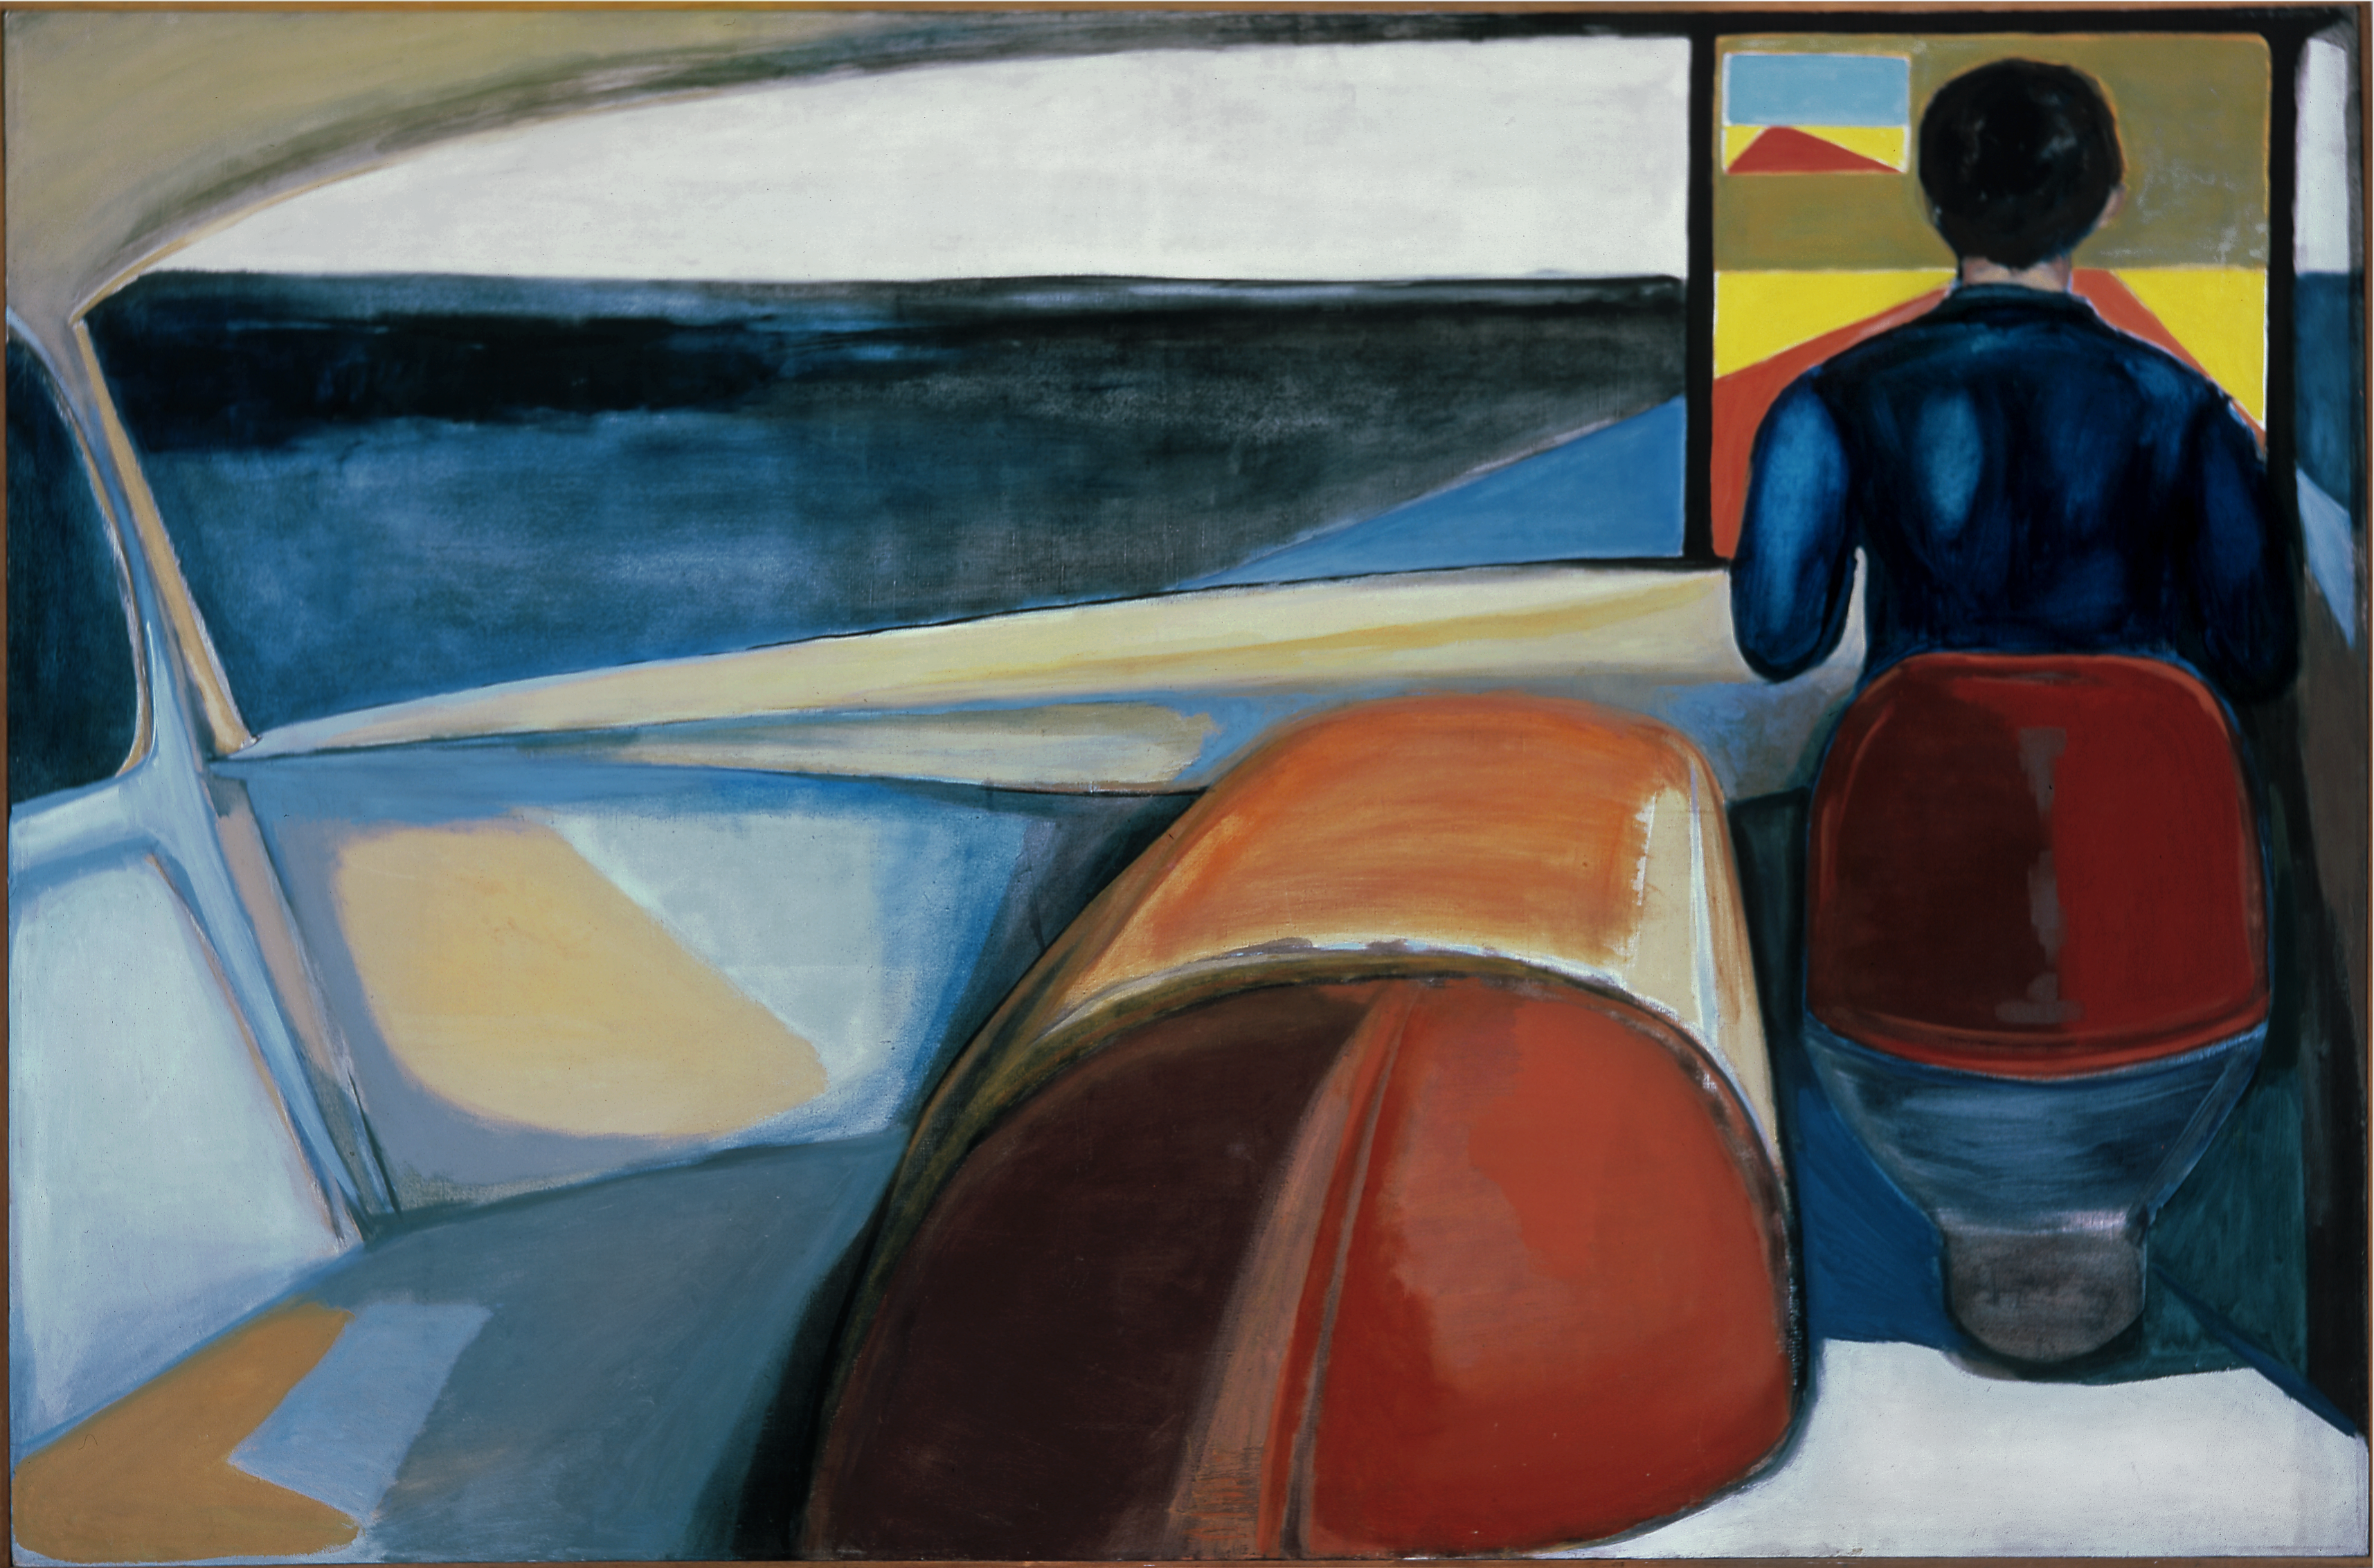 Șofer by Andrzej Wroblewski - 1956 - 132 × 200.5 cm 